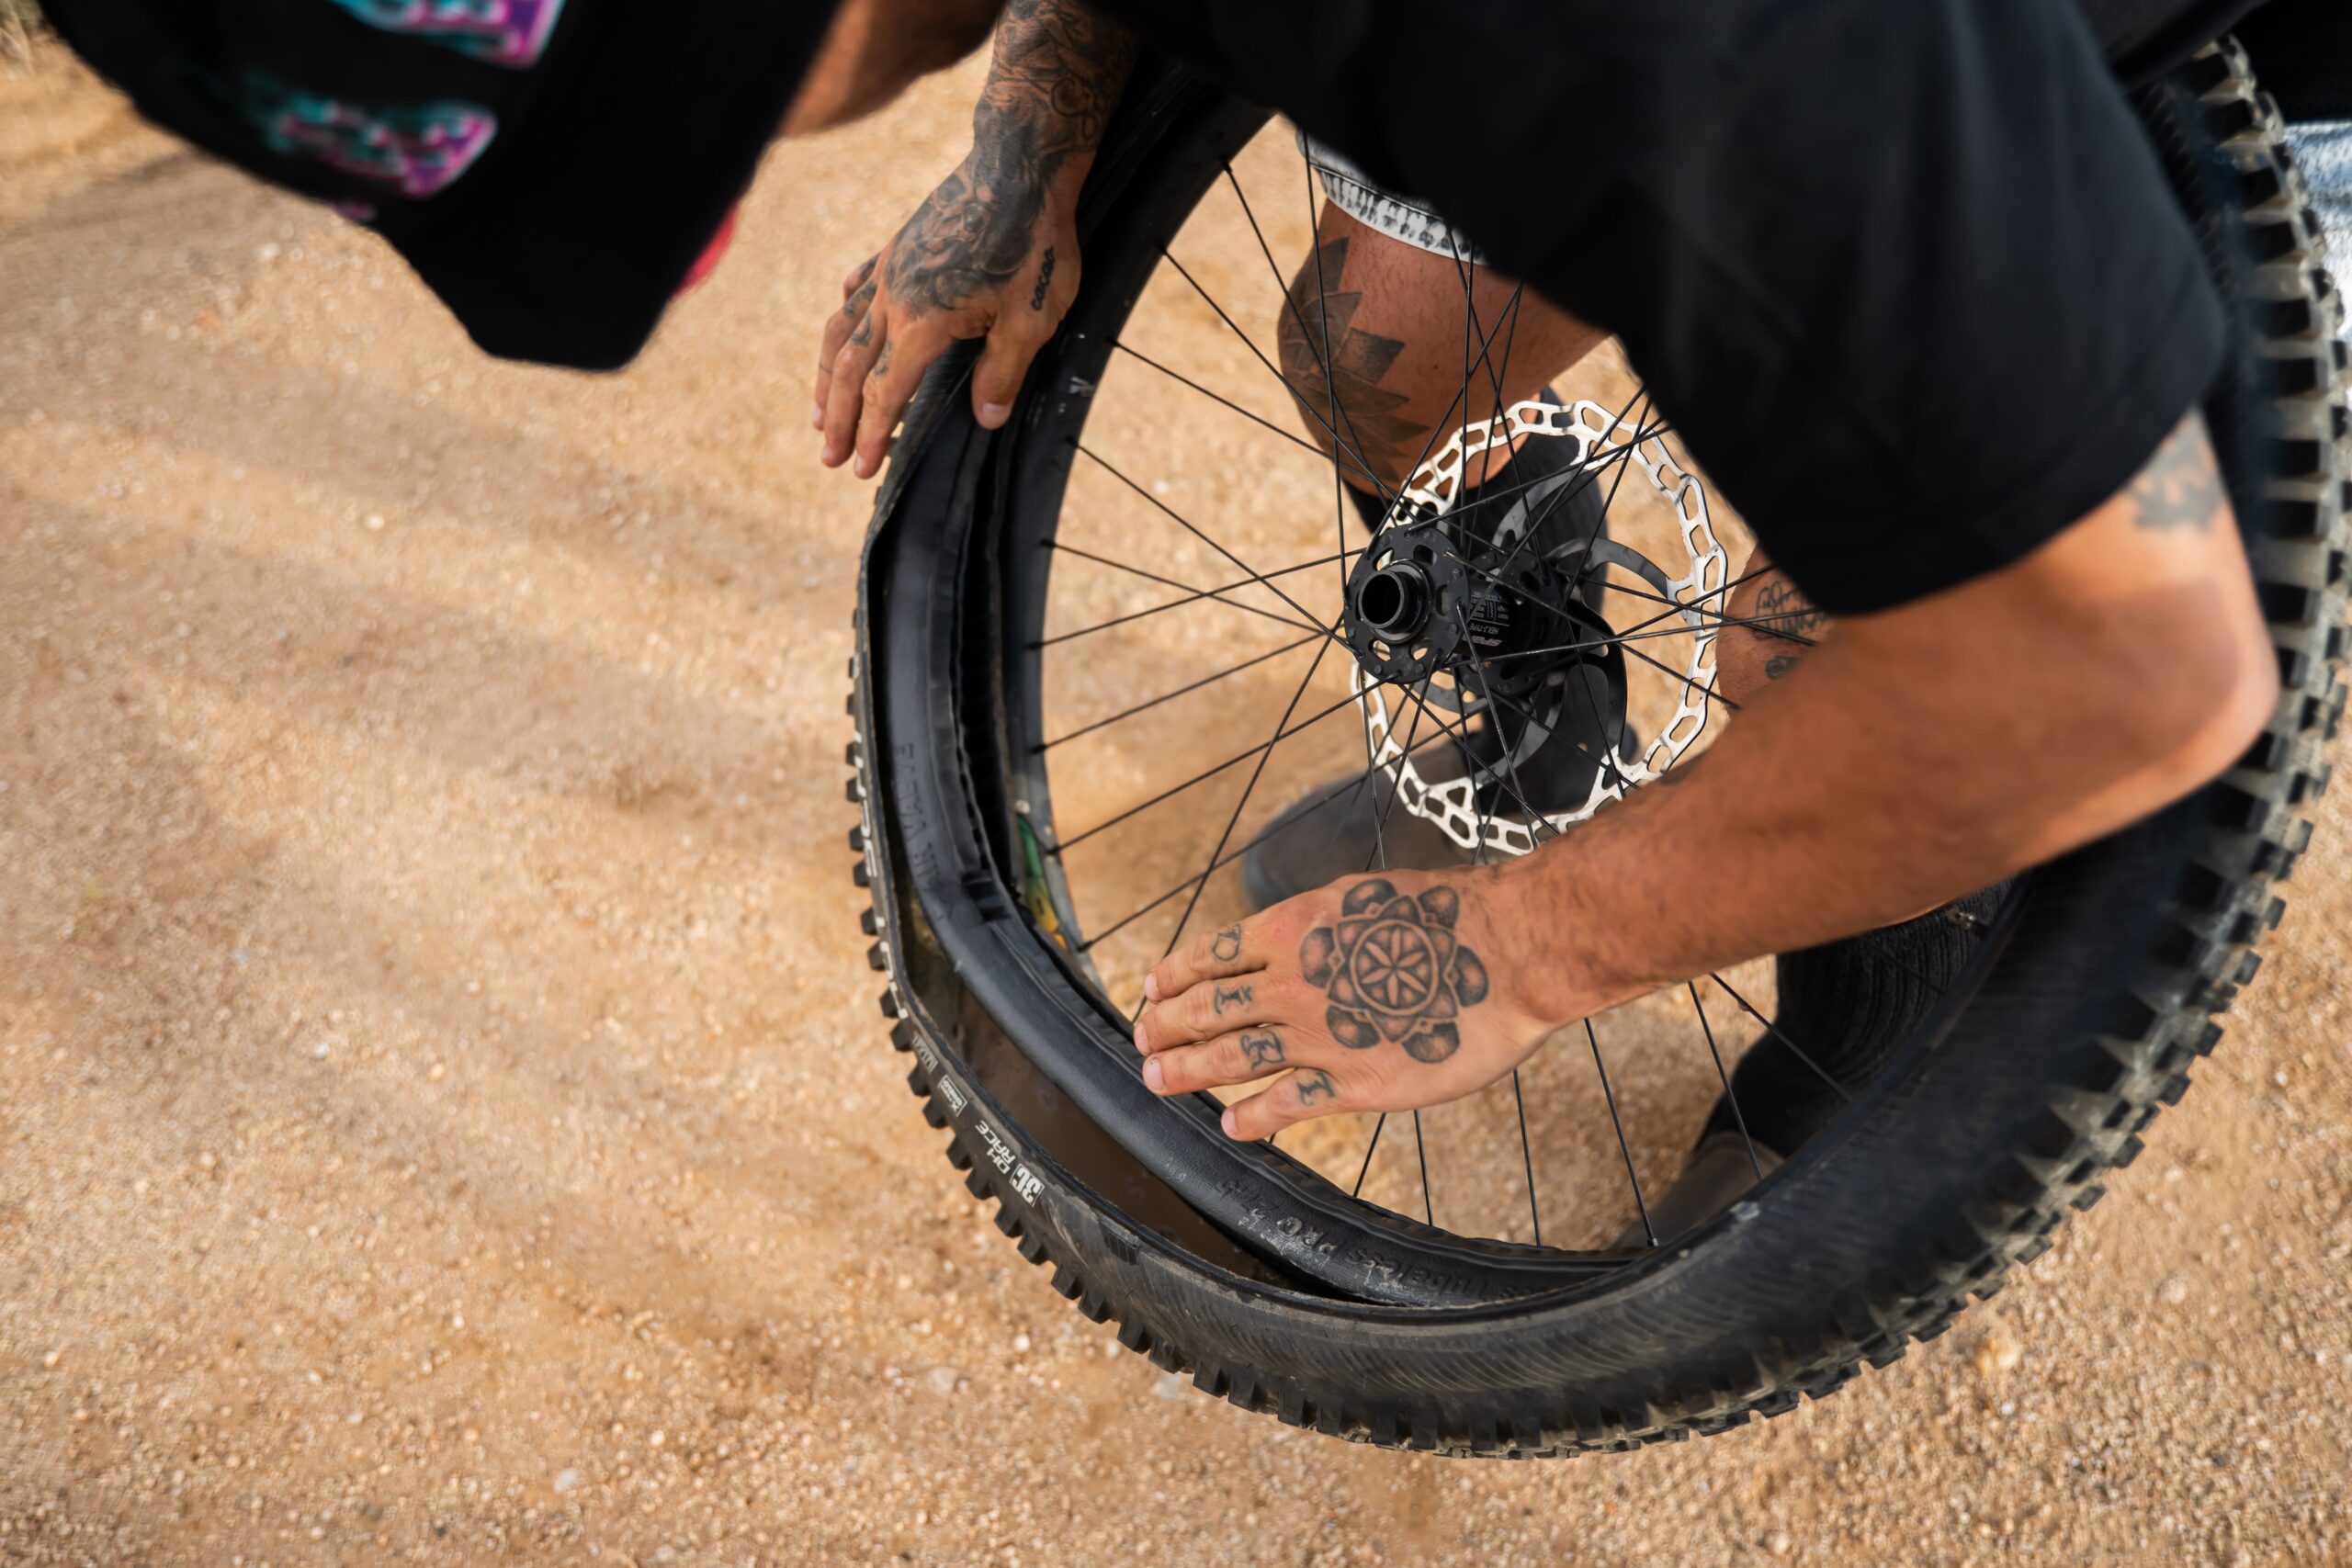 Tannus Tubeless Fusion Pannenschutzeinlage für E-Bikes, die von Freerider Bienvenido Aguado in einen Reifen eingebaut wird.